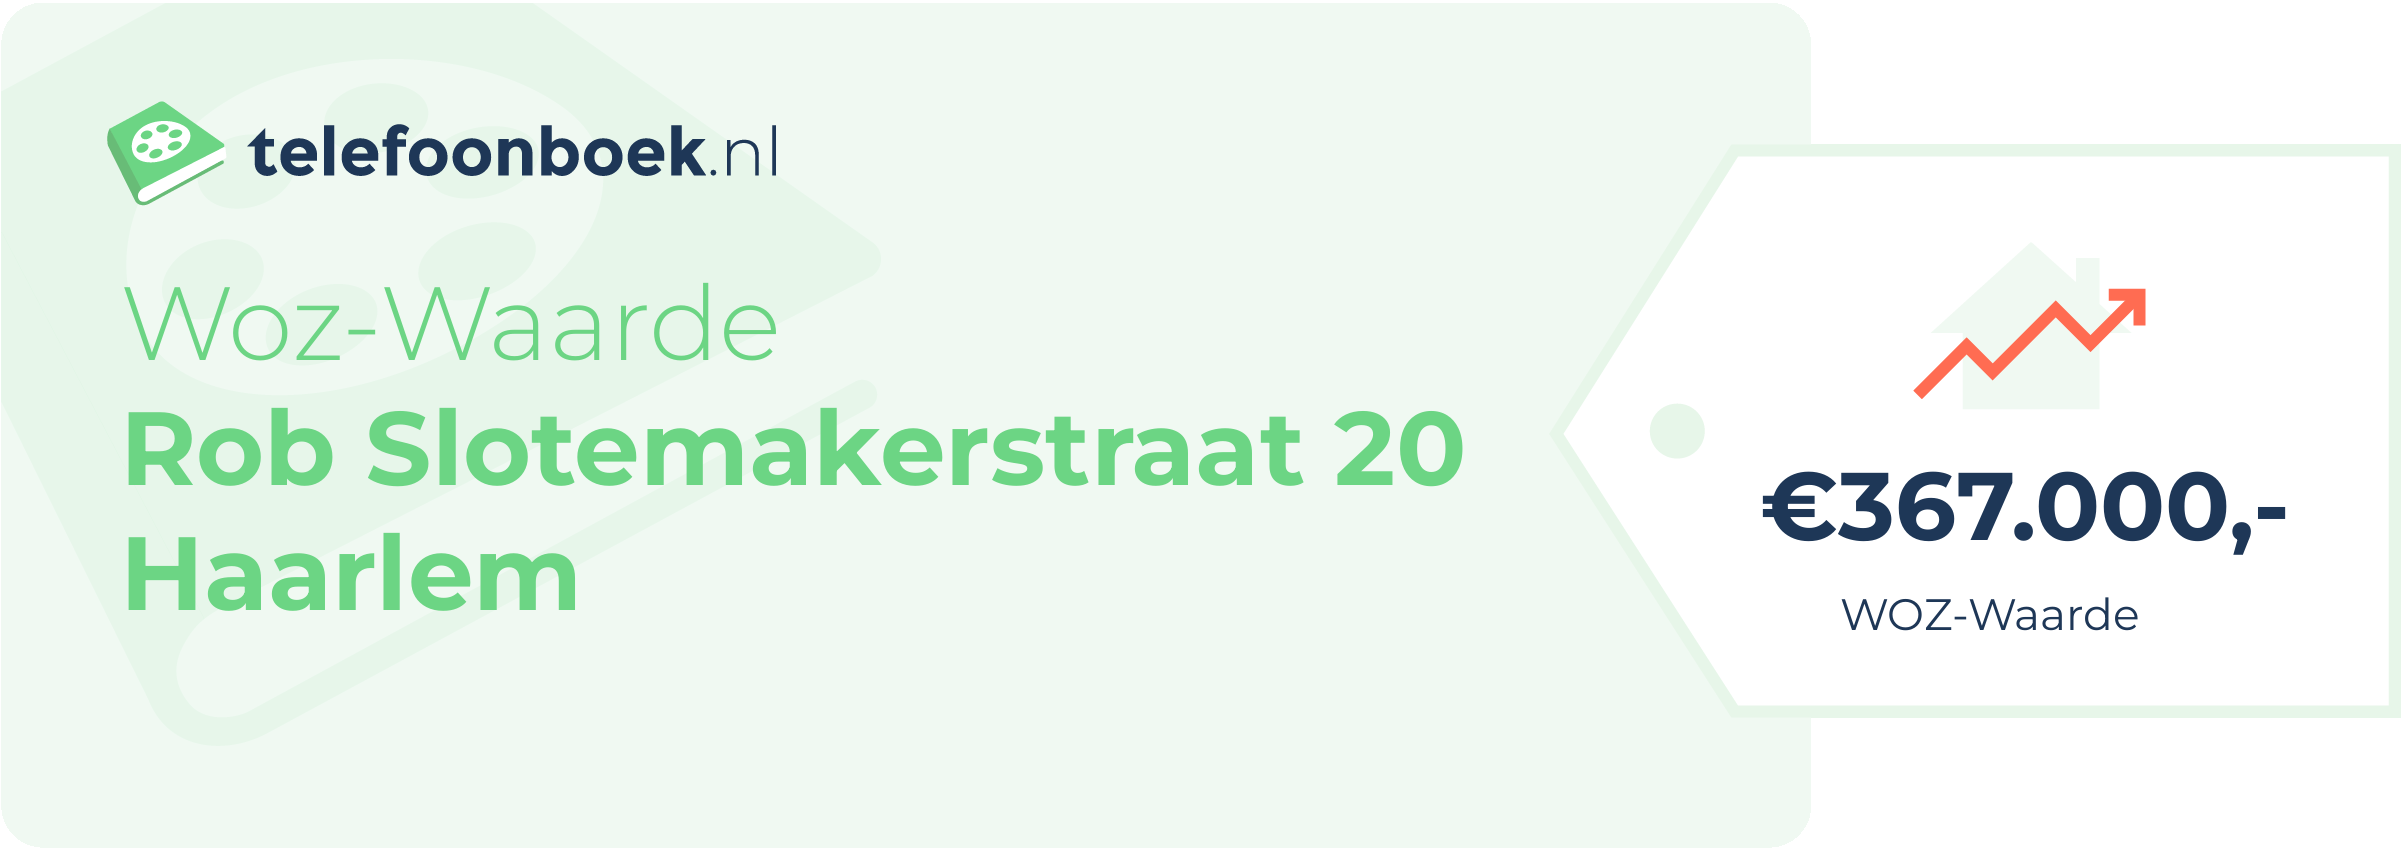 WOZ-waarde Rob Slotemakerstraat 20 Haarlem